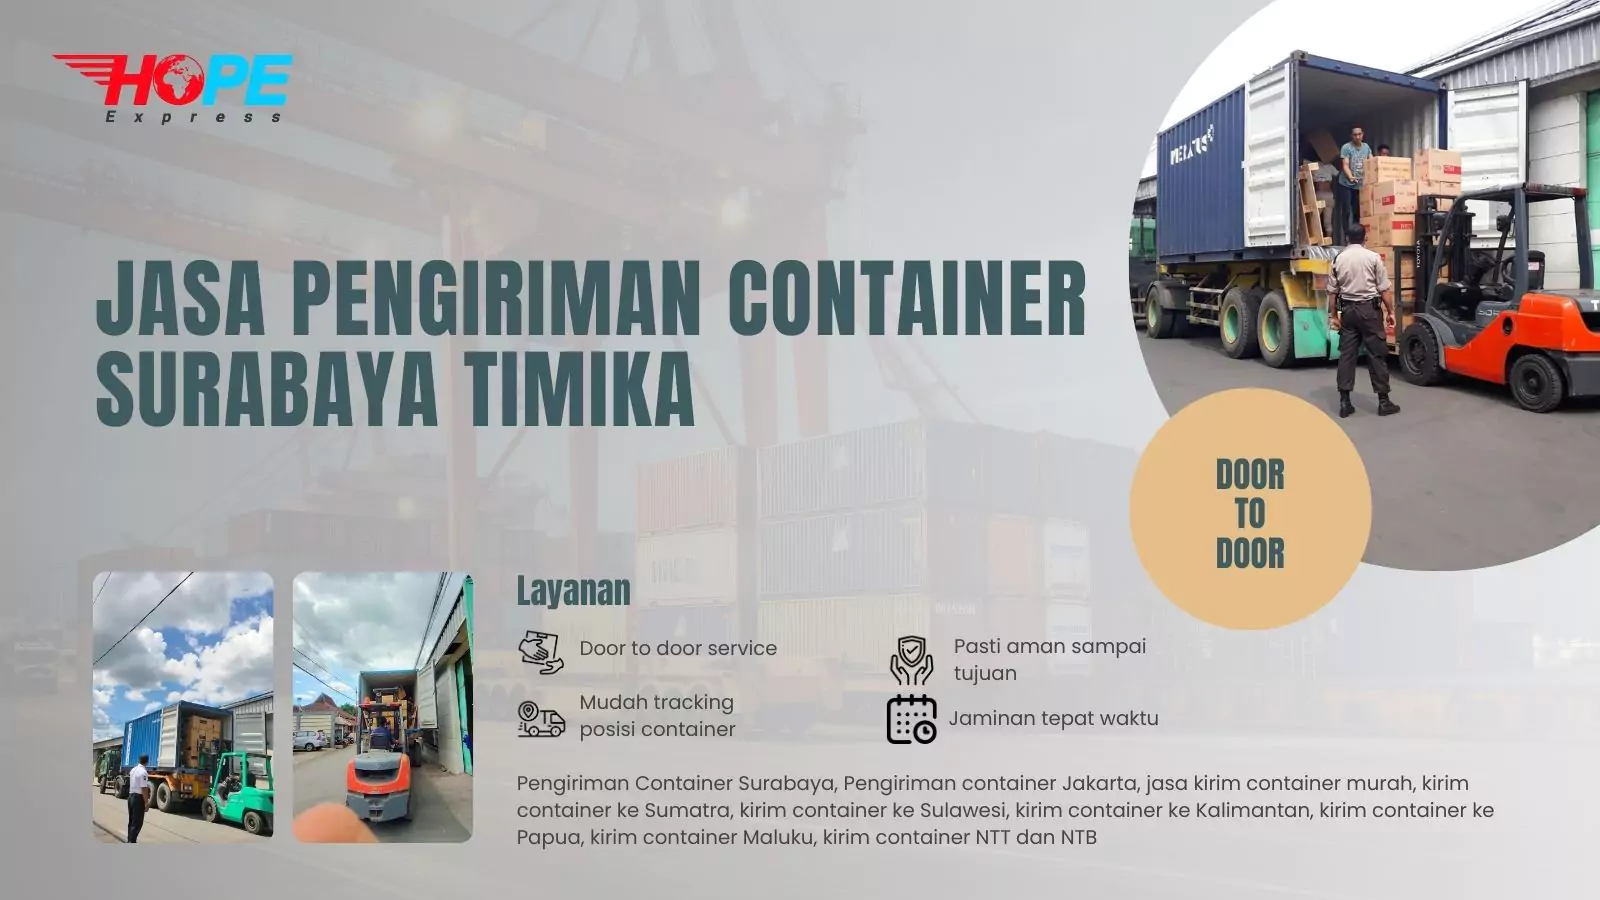 Jasa Pengiriman Container Surabaya Timika